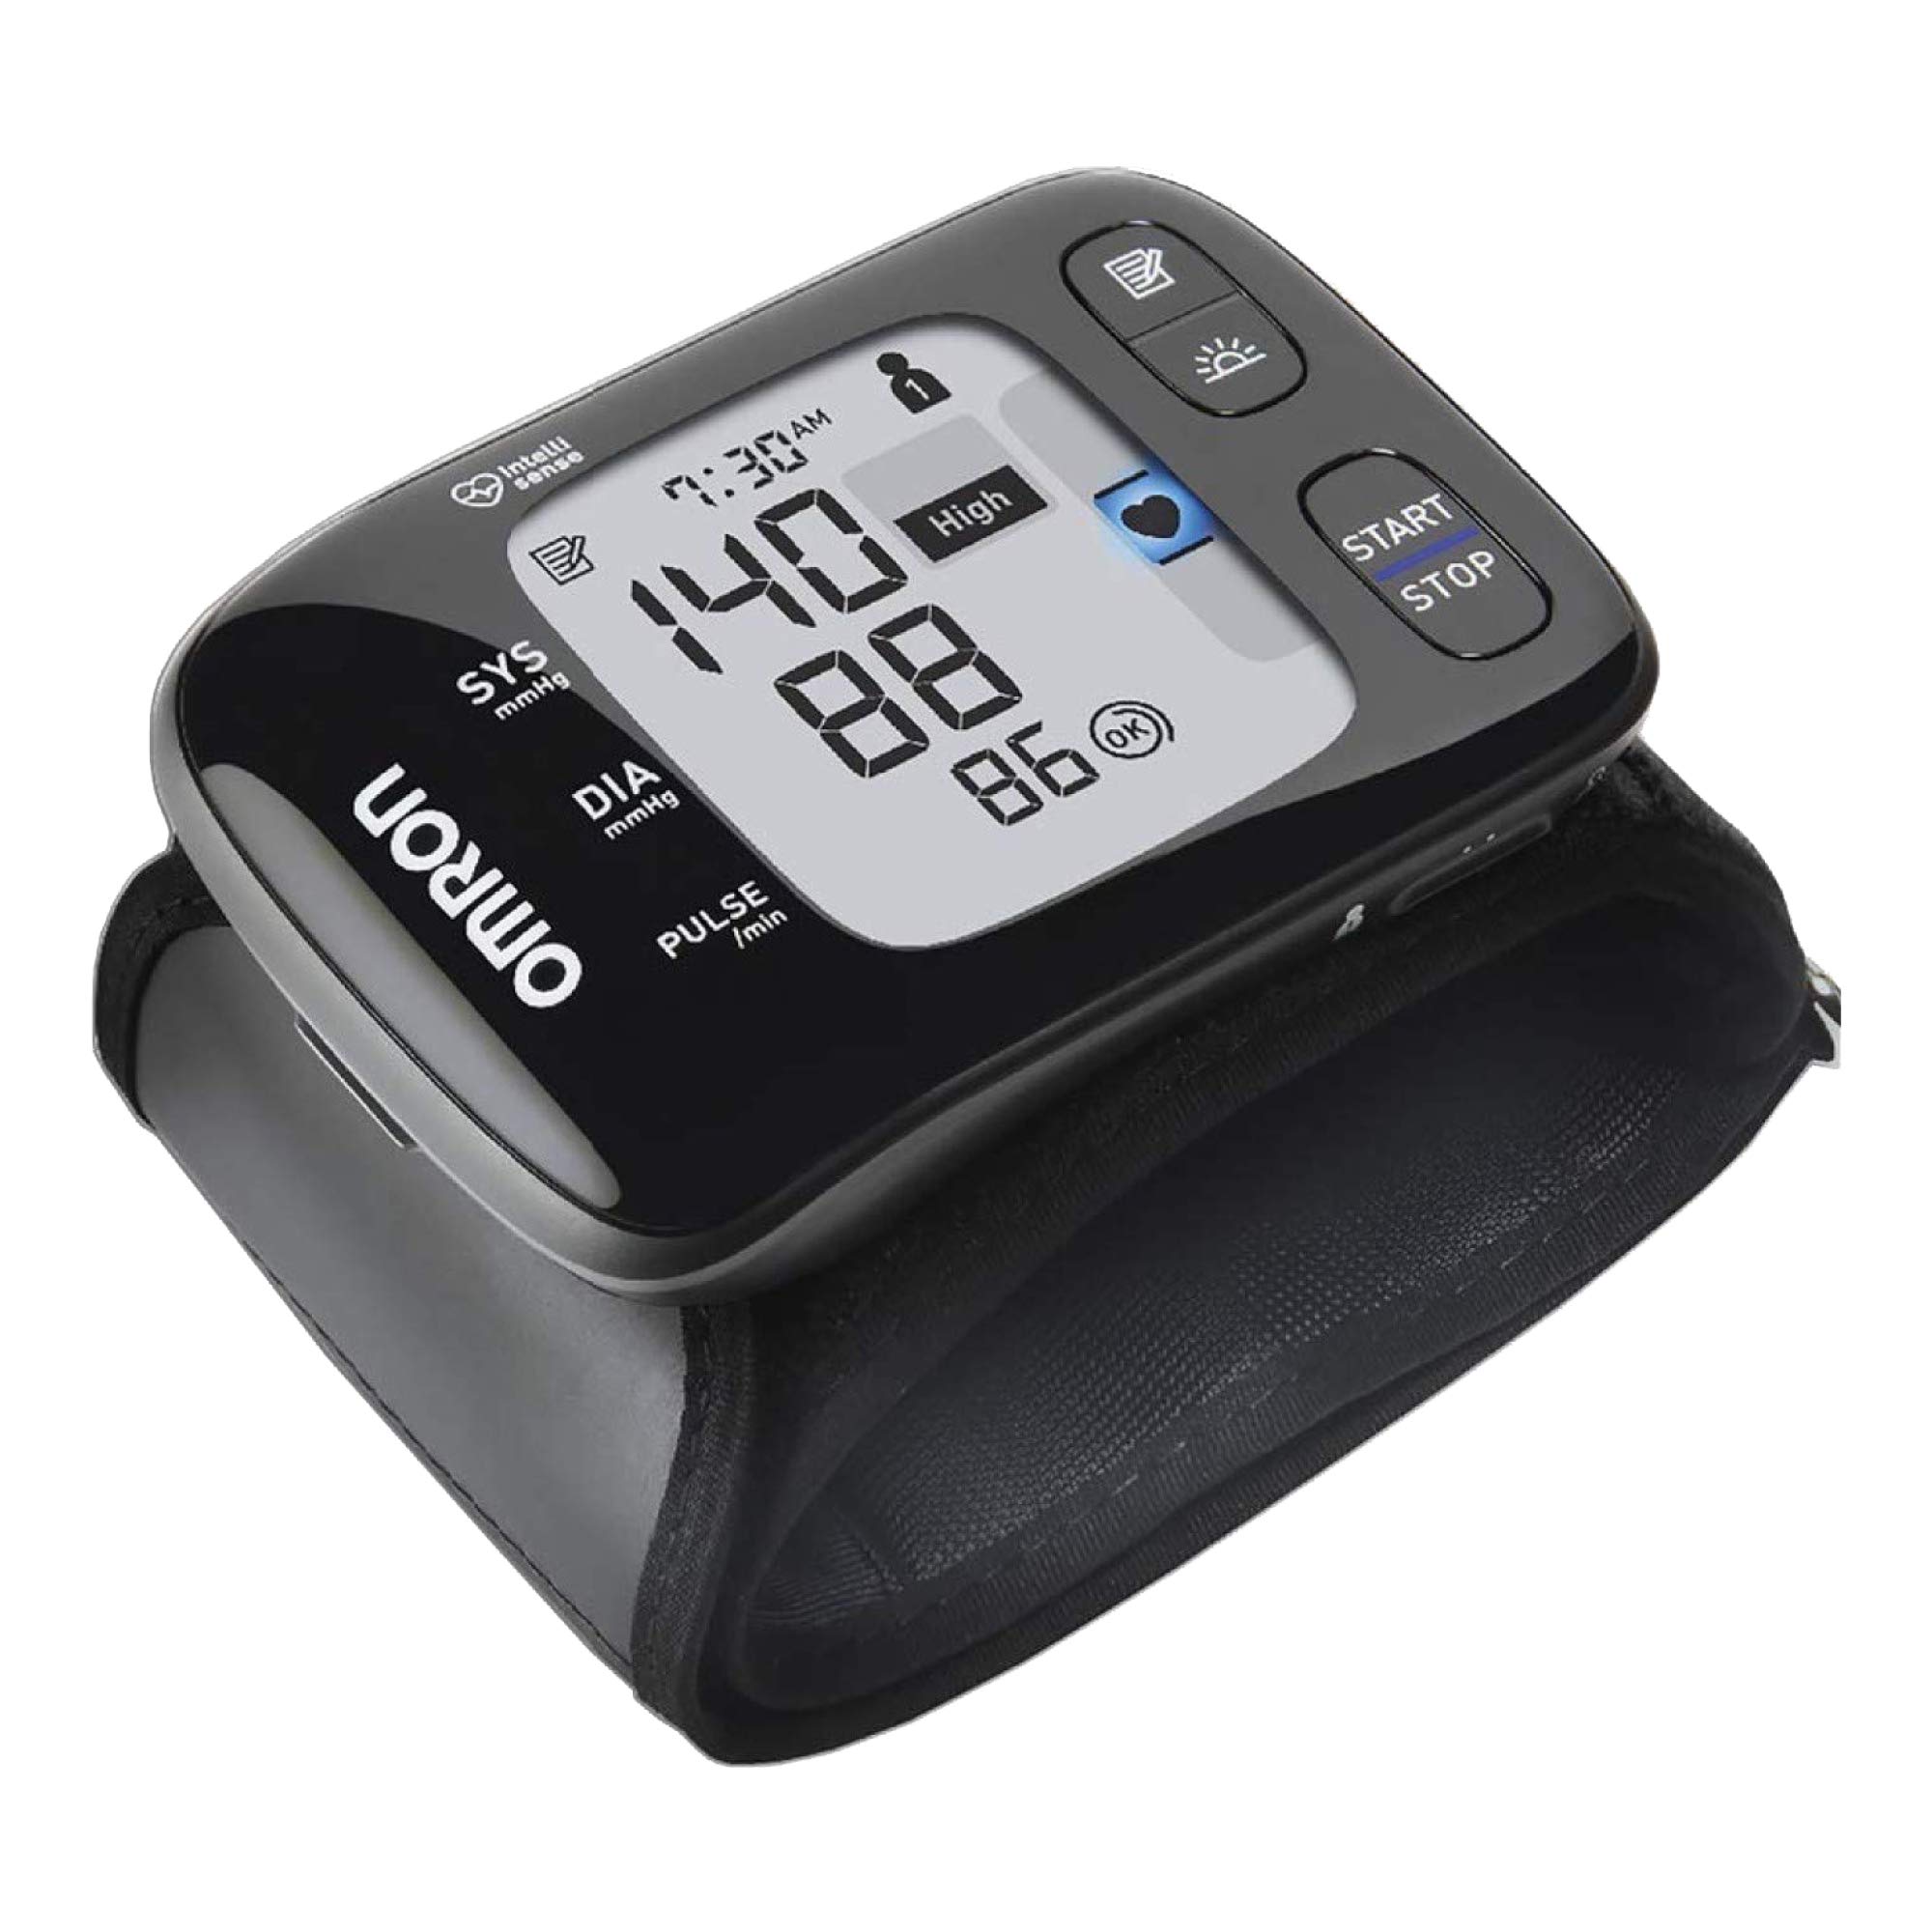 Omron HEM-637 Wrist Blood Pressure Monitor